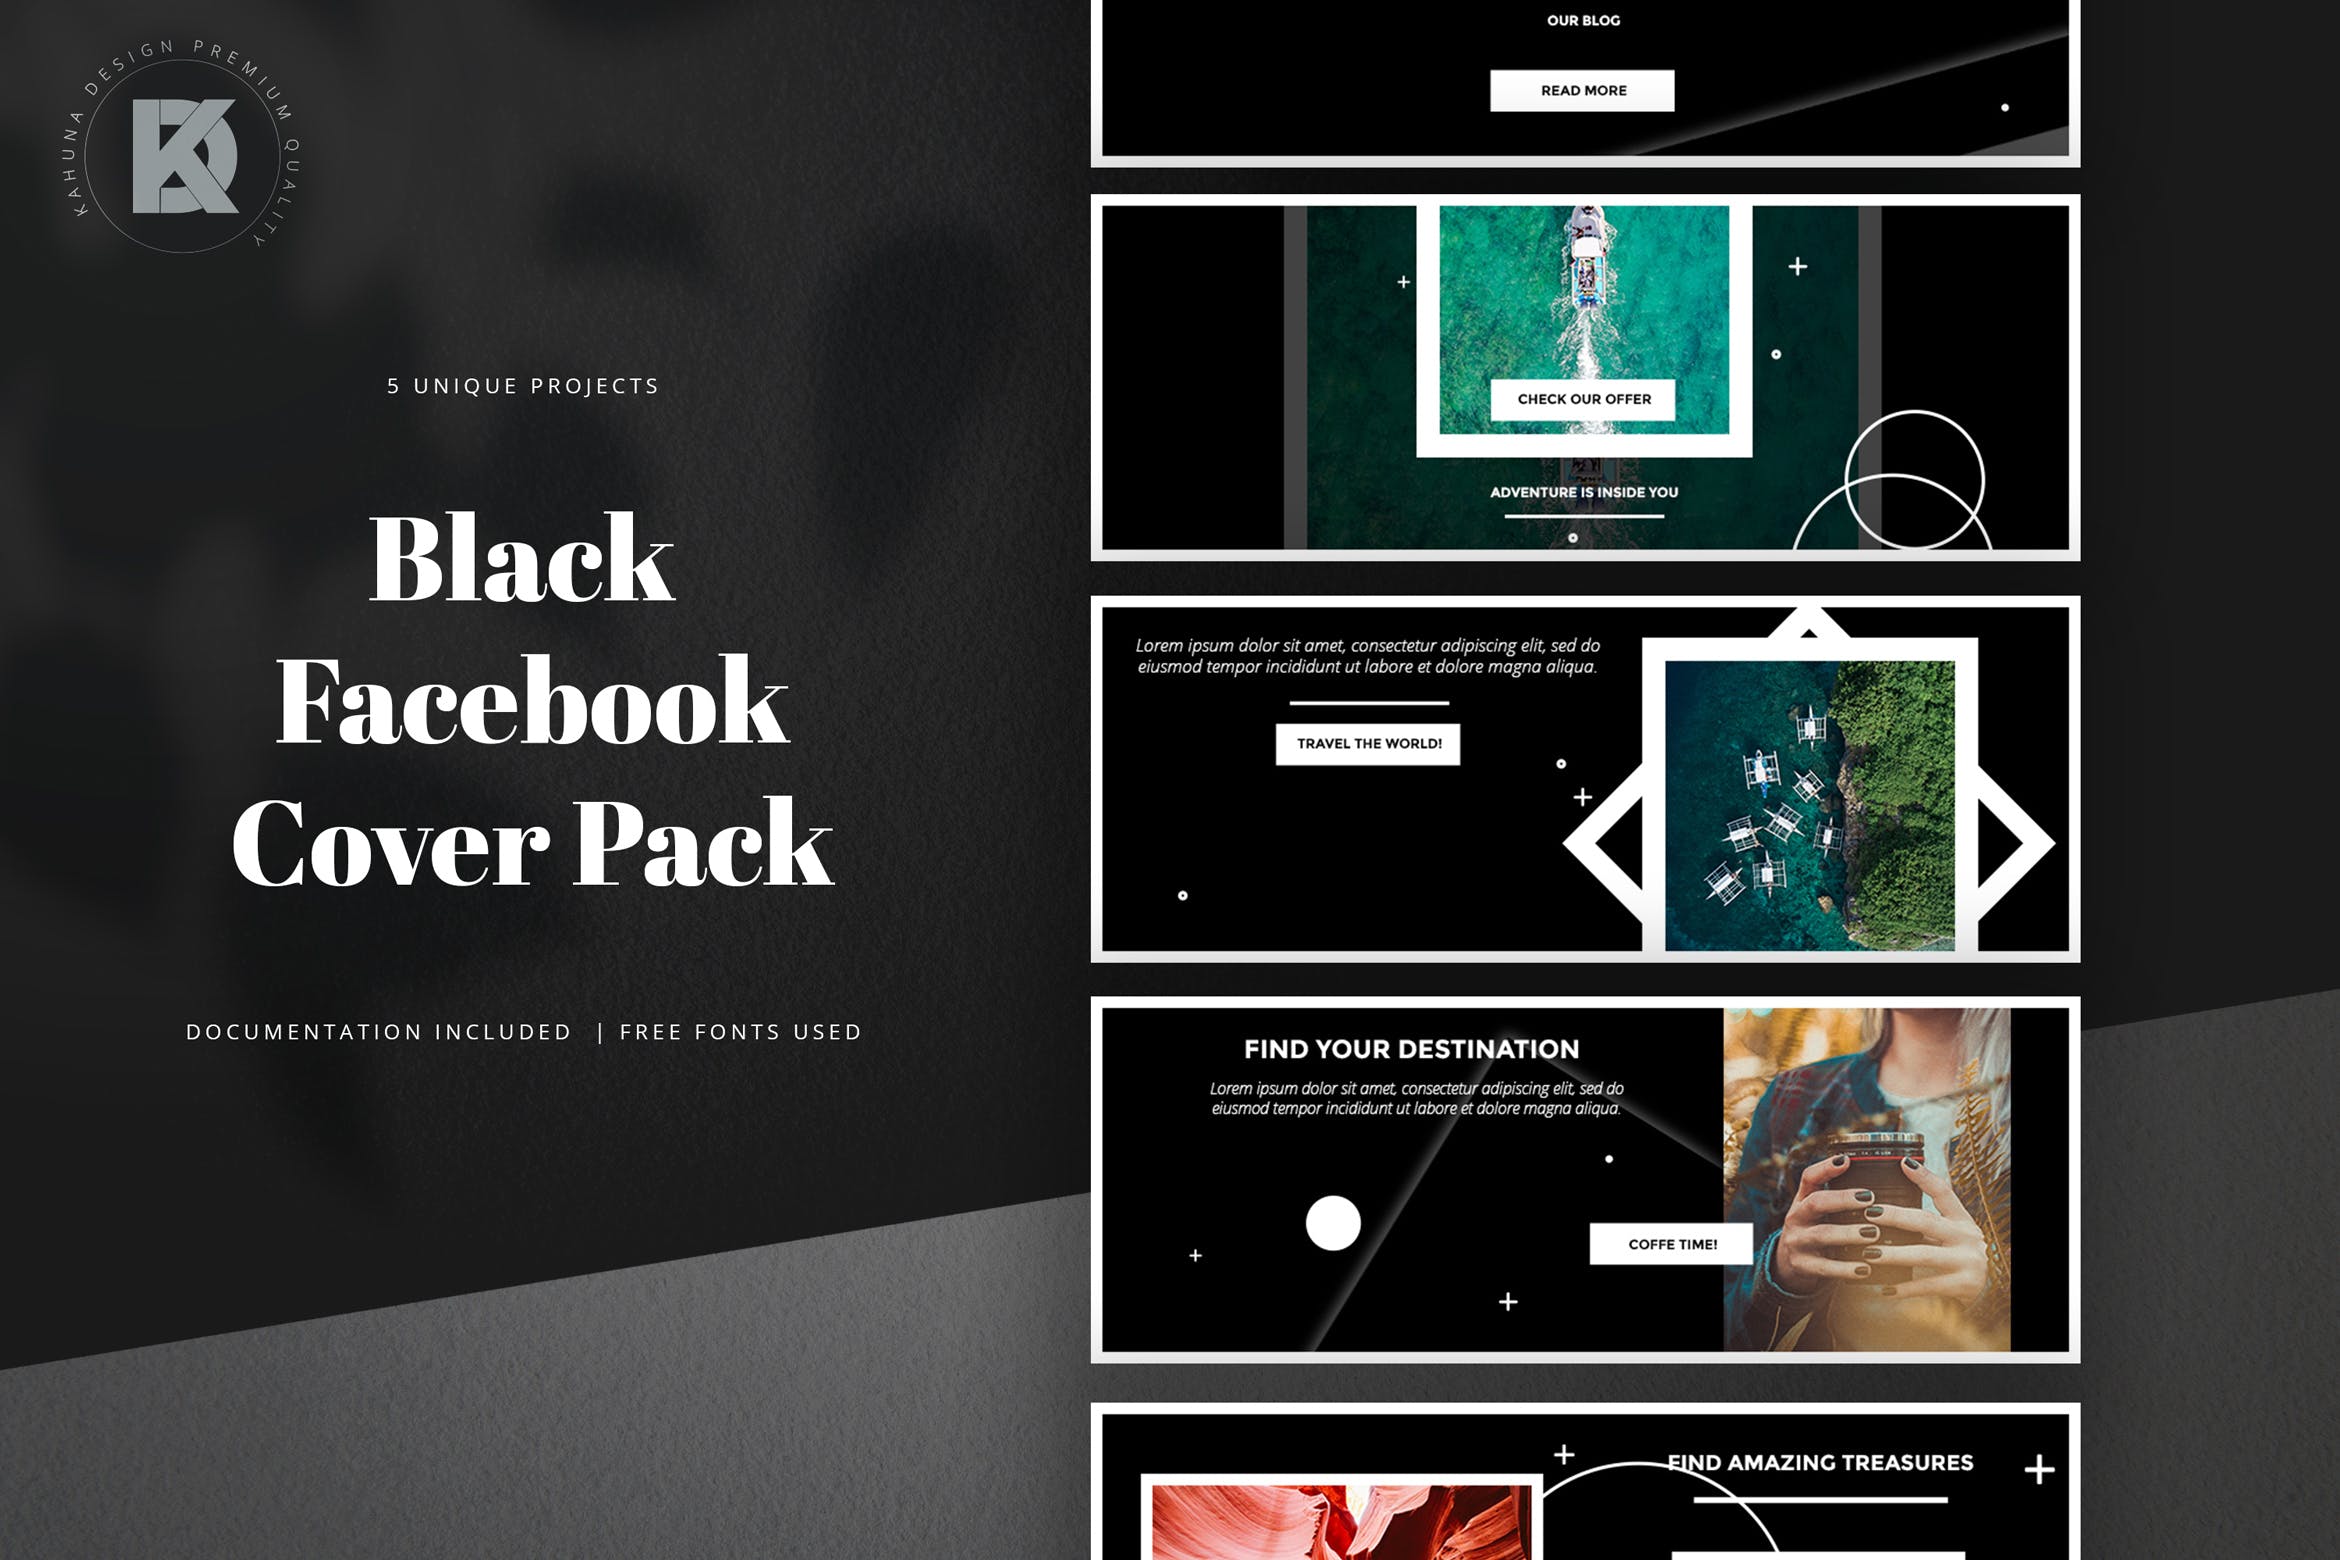 黑色背景Facebook主页封面设计模板素材库精选 Black Facebook Cover Pack插图